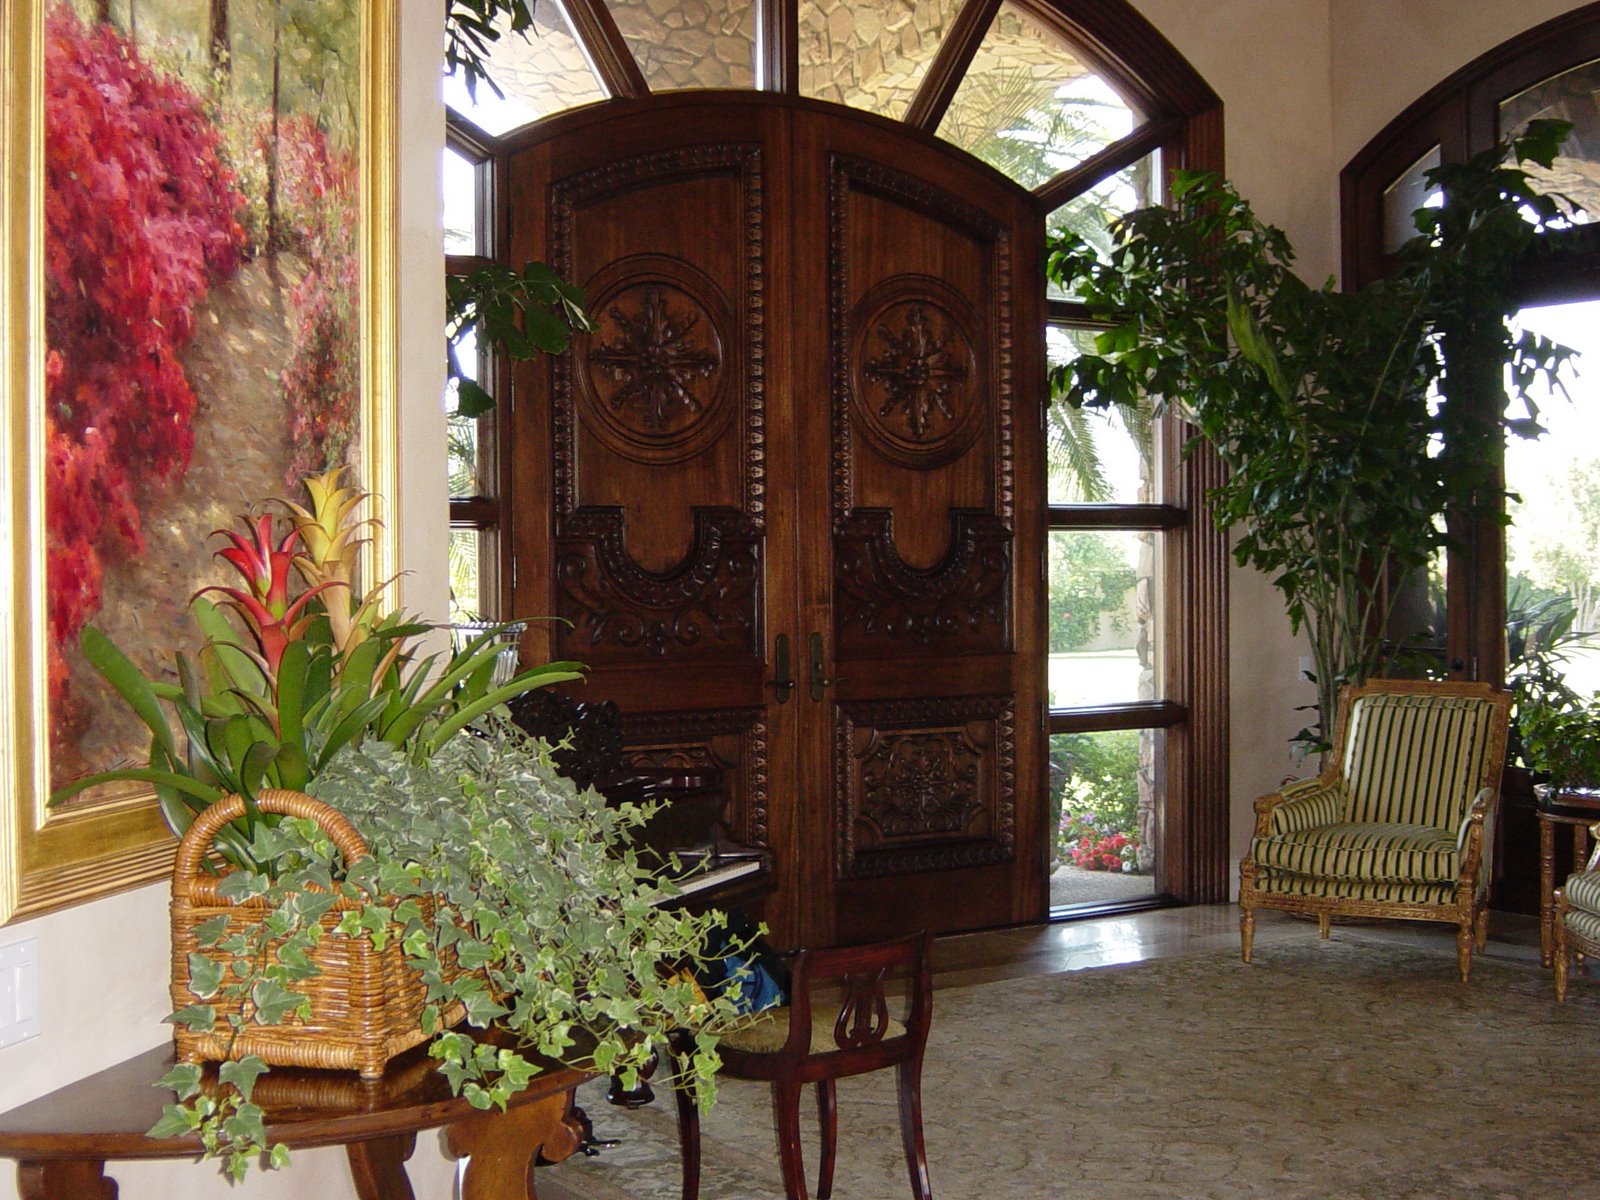 Doorway estate image.JPG